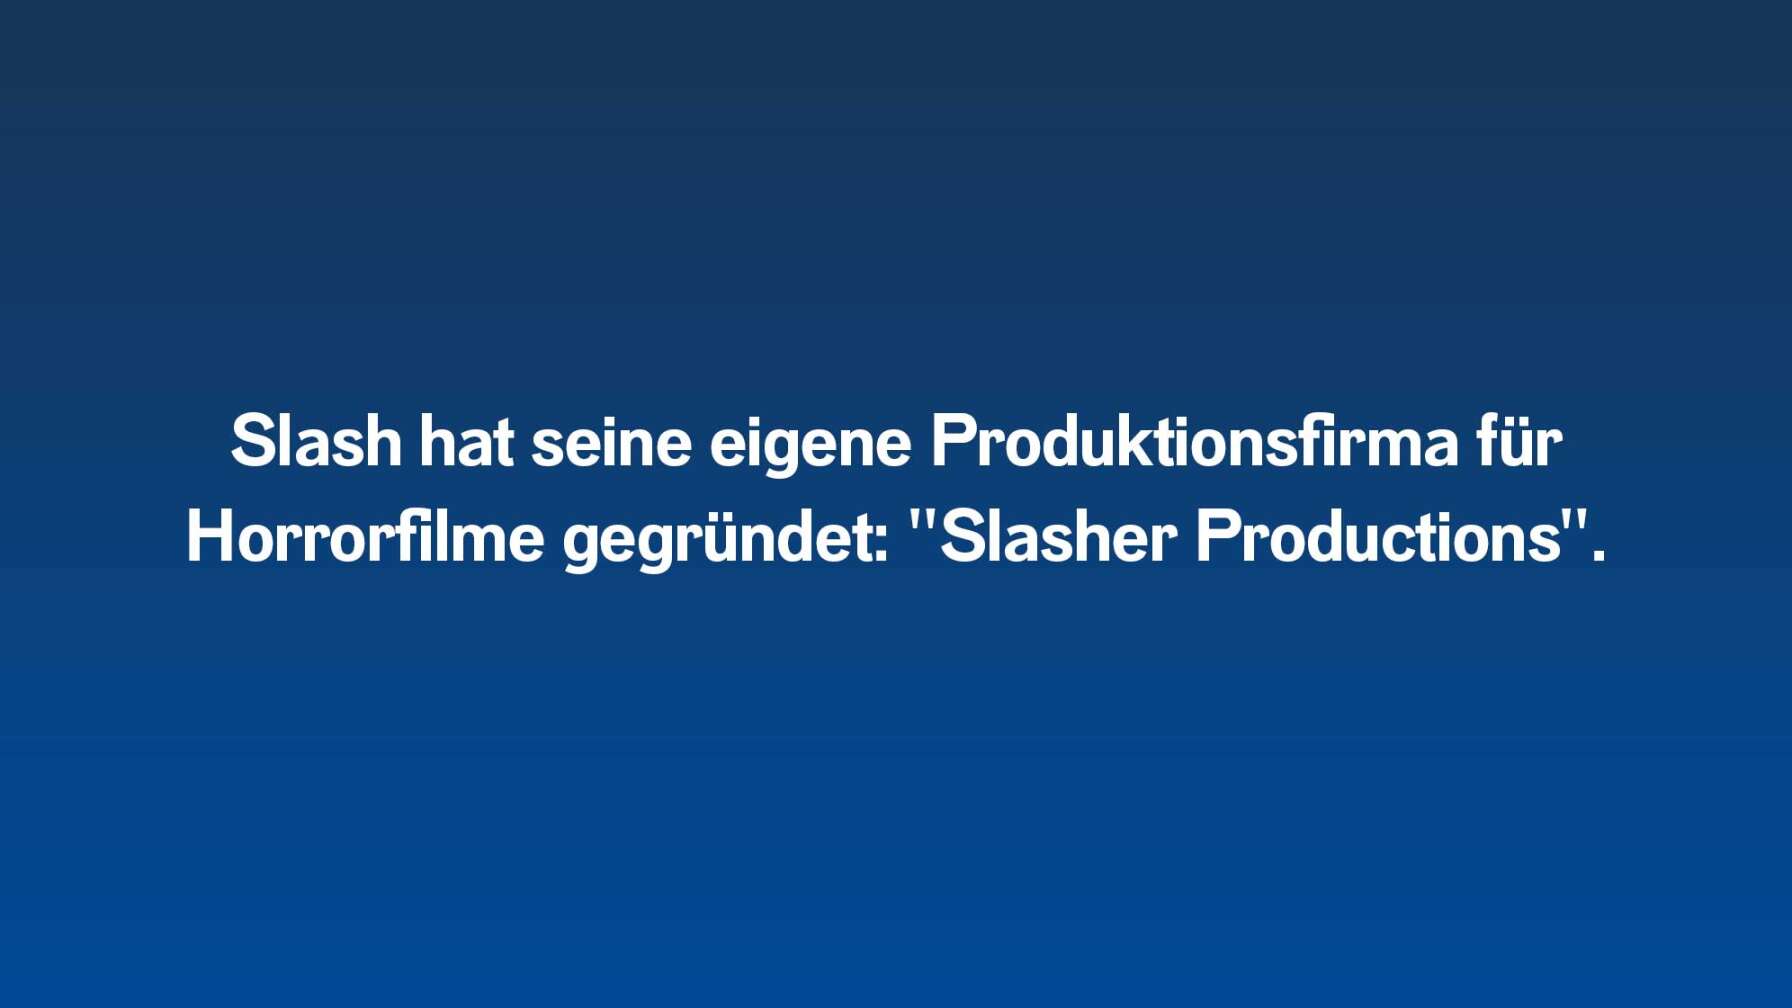 Slash hat seine eigene Produktionsfirma für Horrorfilme gegründet: "Slasher Productions".